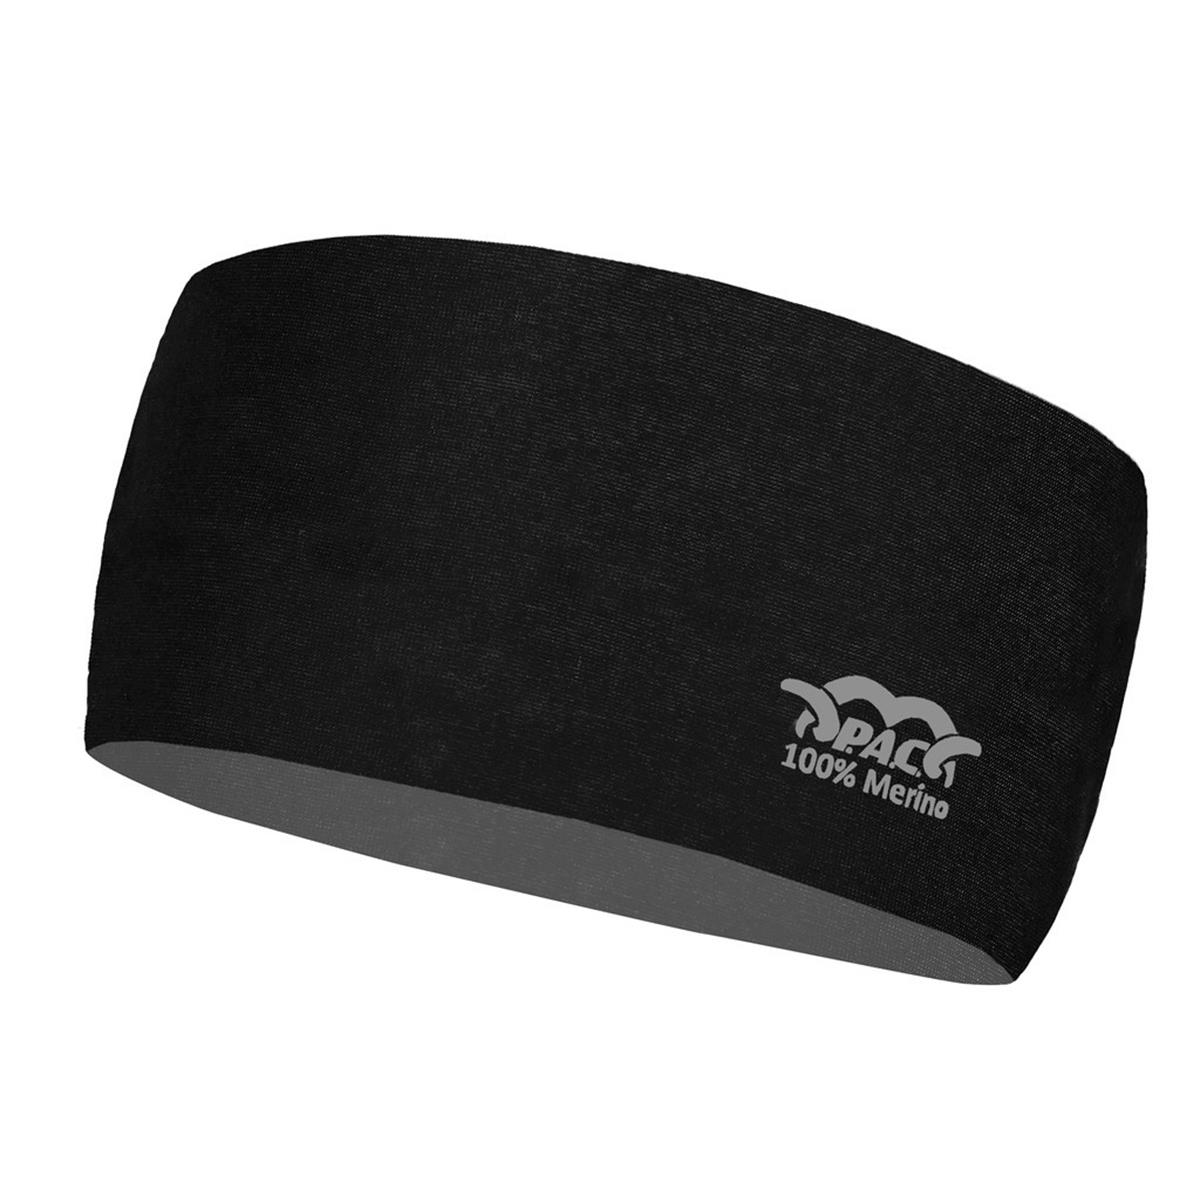 Total SAM\'s Black | Merino Headband PAC